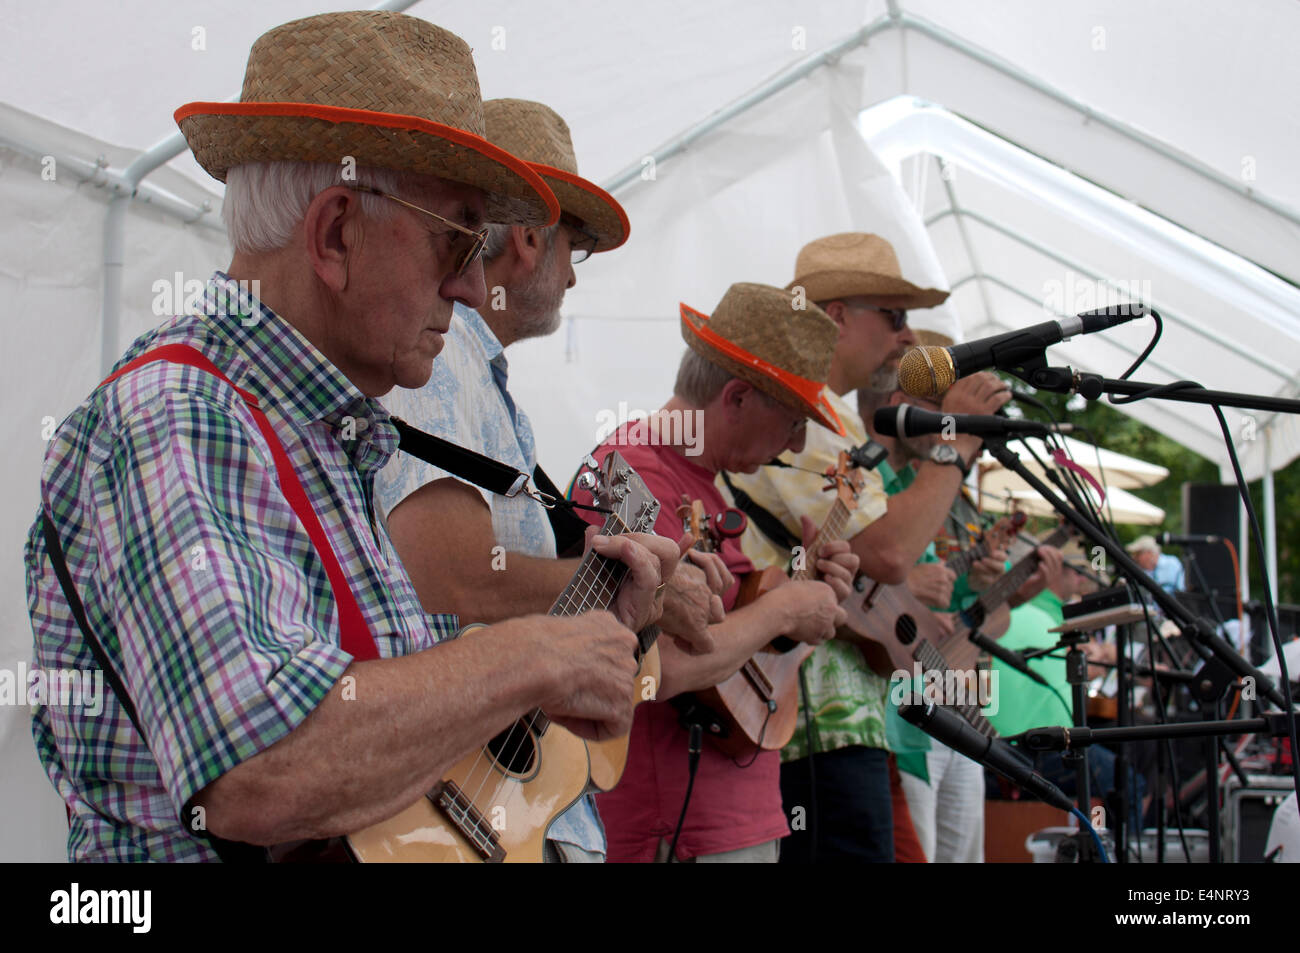 A ukulele band at the Leamington Spa Ukulele Festival Stock Photo